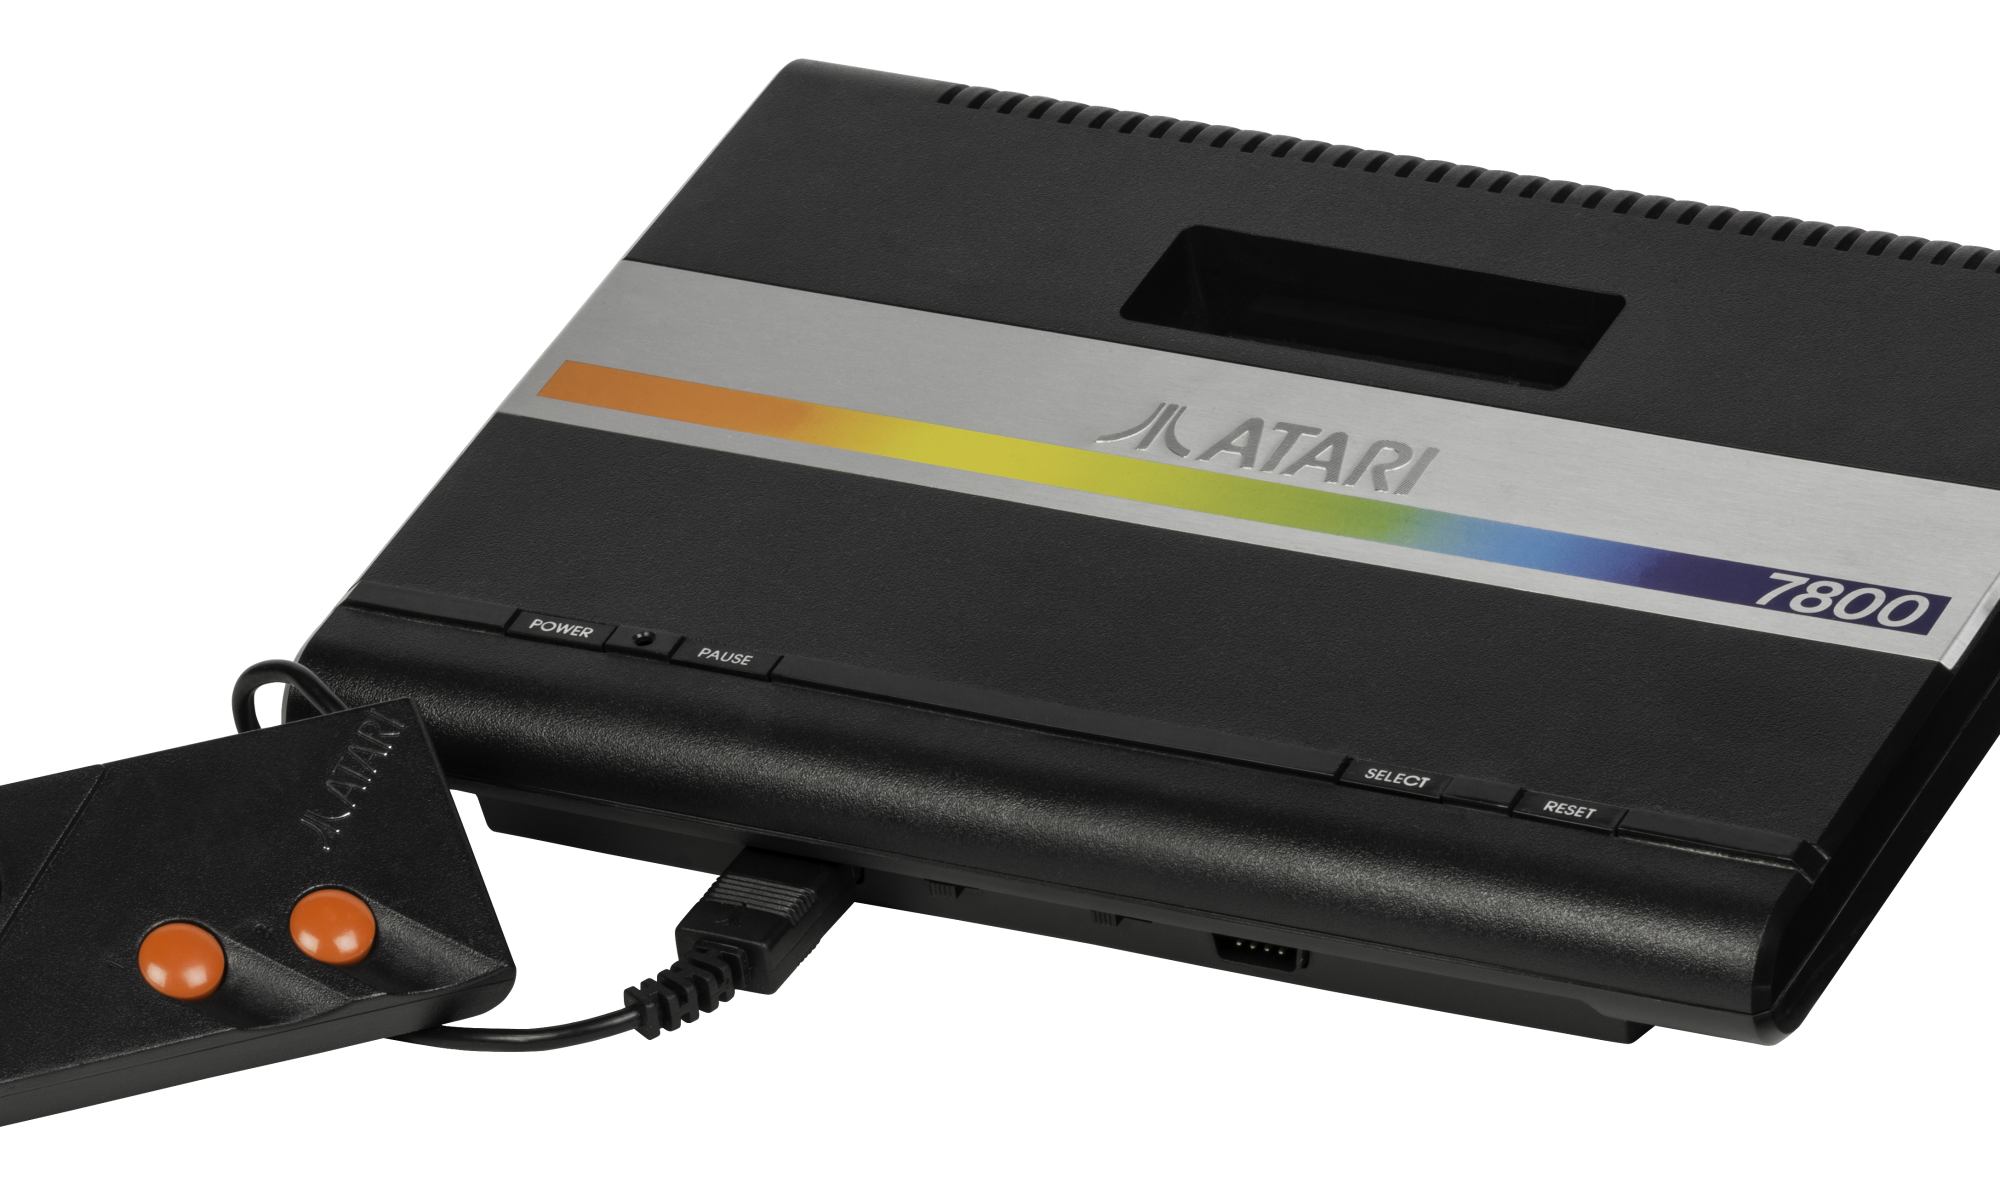 Service Repair | Atari 7800 AV Mod Composite Video Upgrade